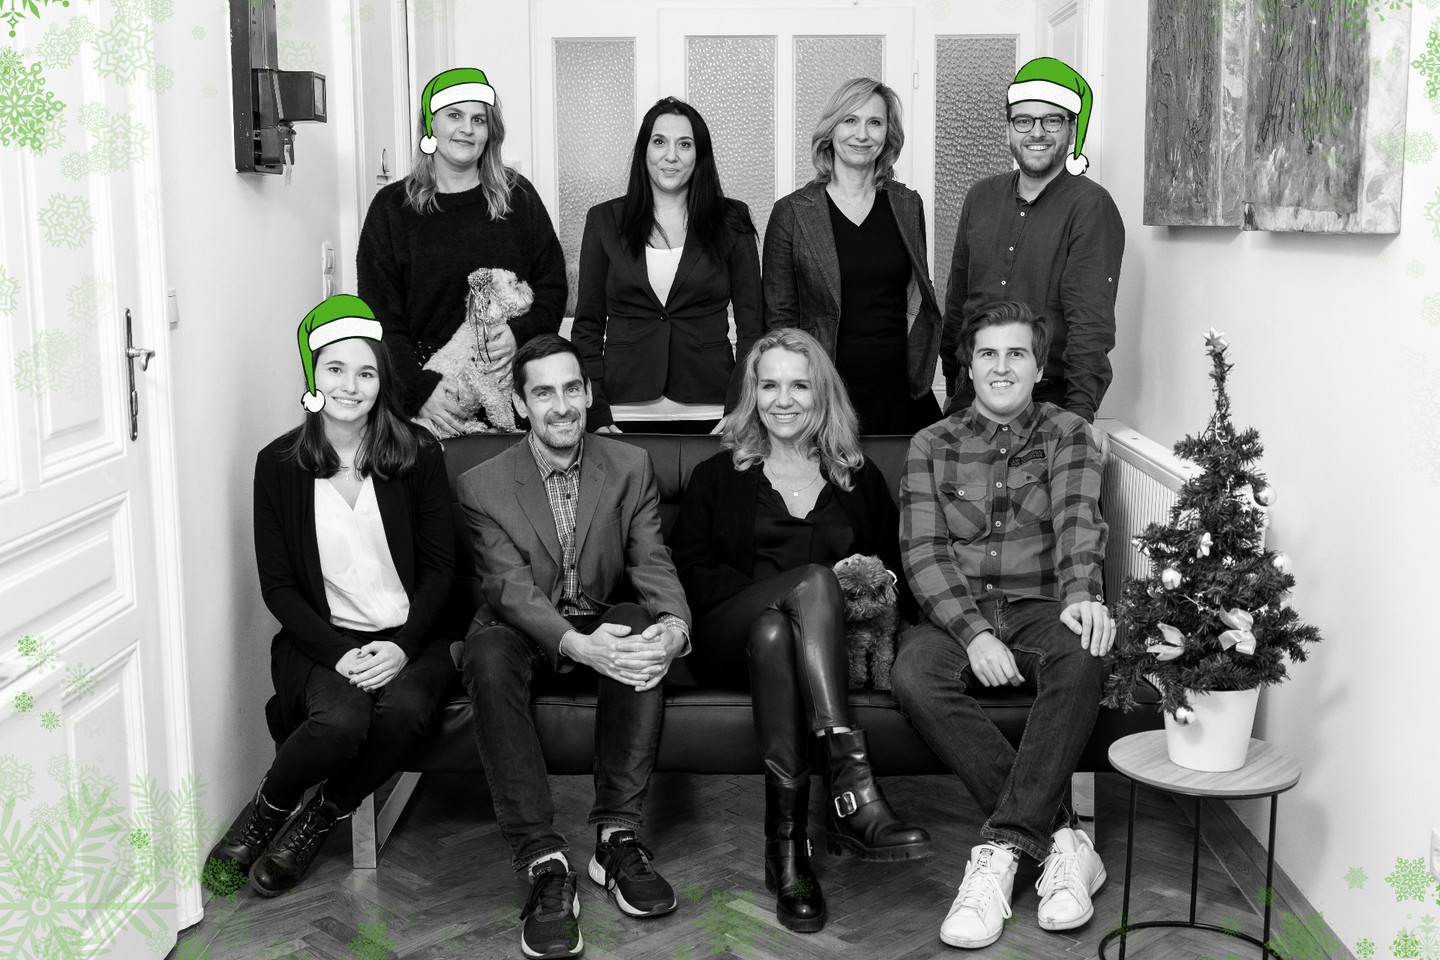 Team Brandenstein Communications wünscht eine schöne Weihnachtszeit und ein erfolgreiches neues Jahr! 🎄✨
.
.
.
.
#christmas #weihnachten #weihnachtenkannkommen #weihnachten2022 #weihnachtszeit #weihnachtsstimmung #weihnachteninwien #happyholidays #pr #agency #welove #festderliebe #bettercommunications #agenturleben